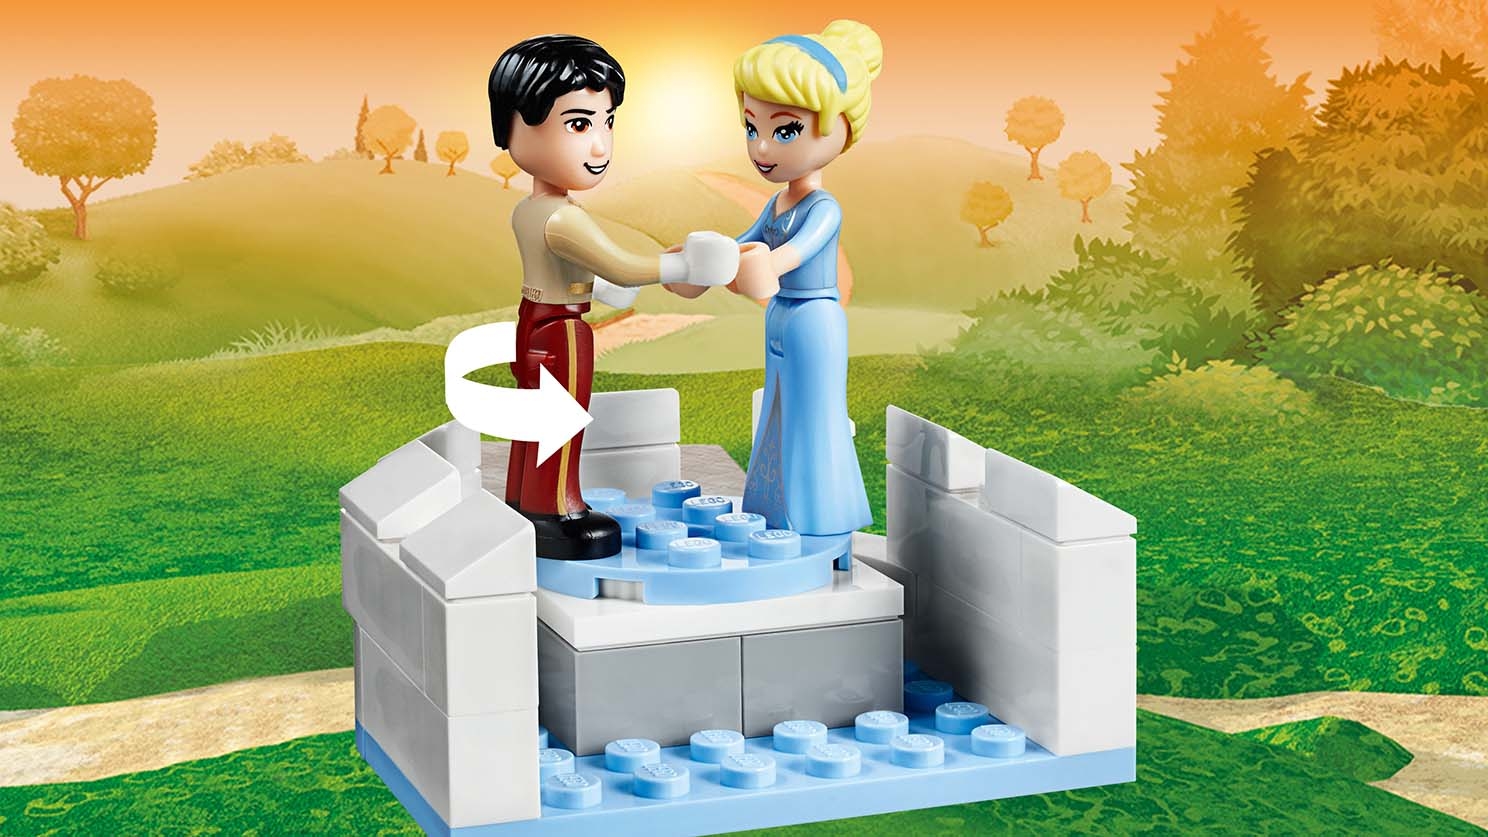 シンデレラのお城 41154 - レゴ® |ディズニーセット - LEGO.comキッズ